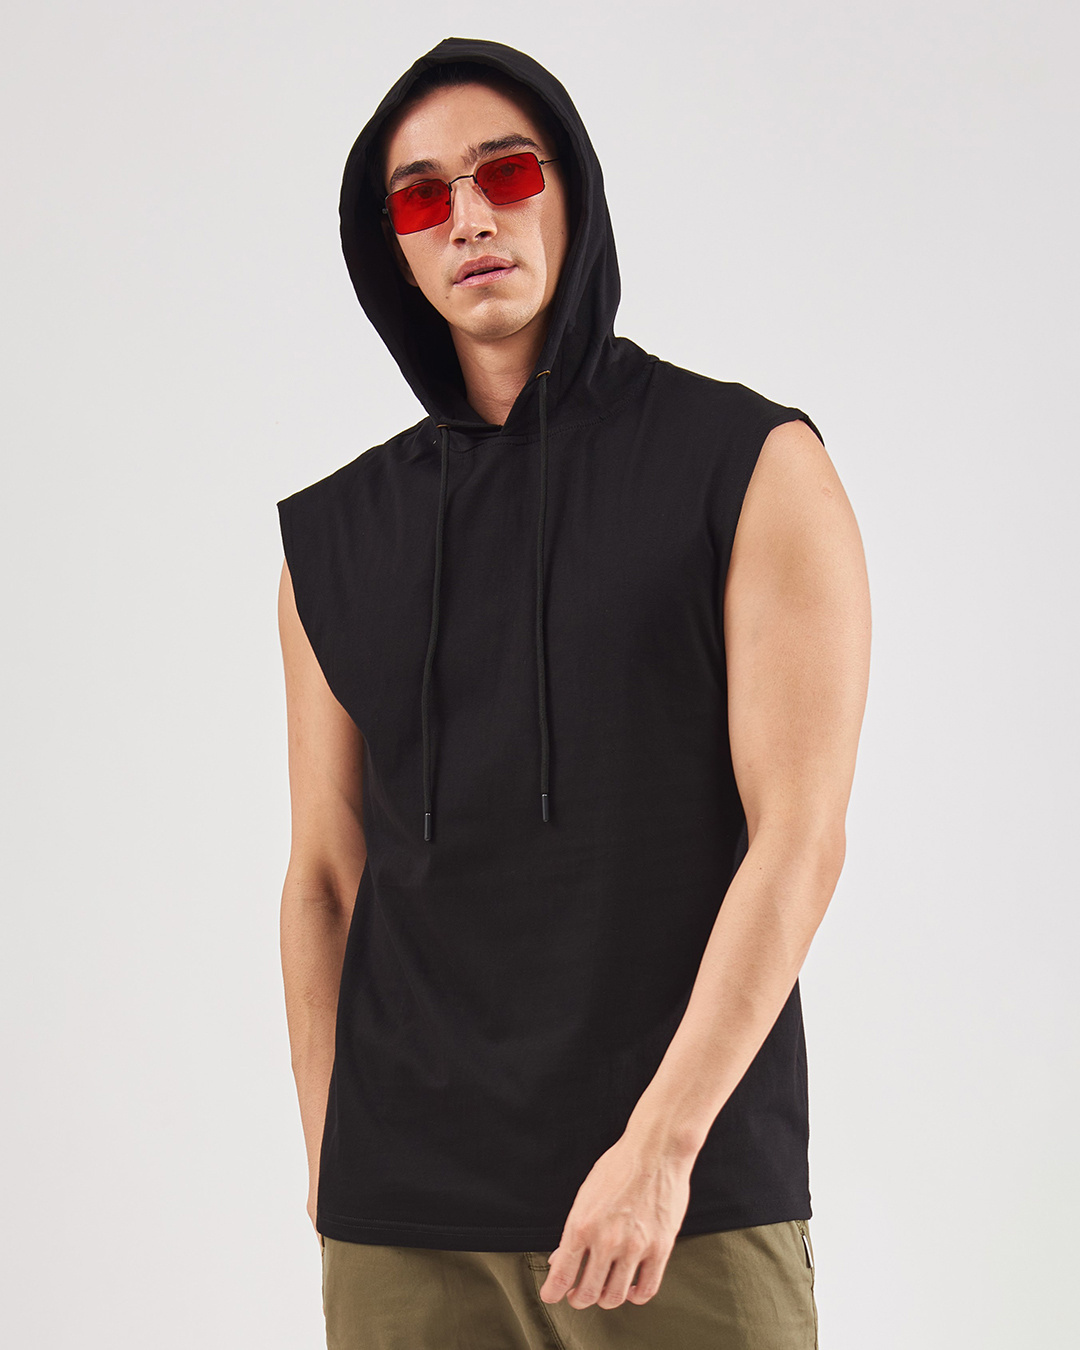 Buy Men's Black Oversized Vest Online at Bewakoof